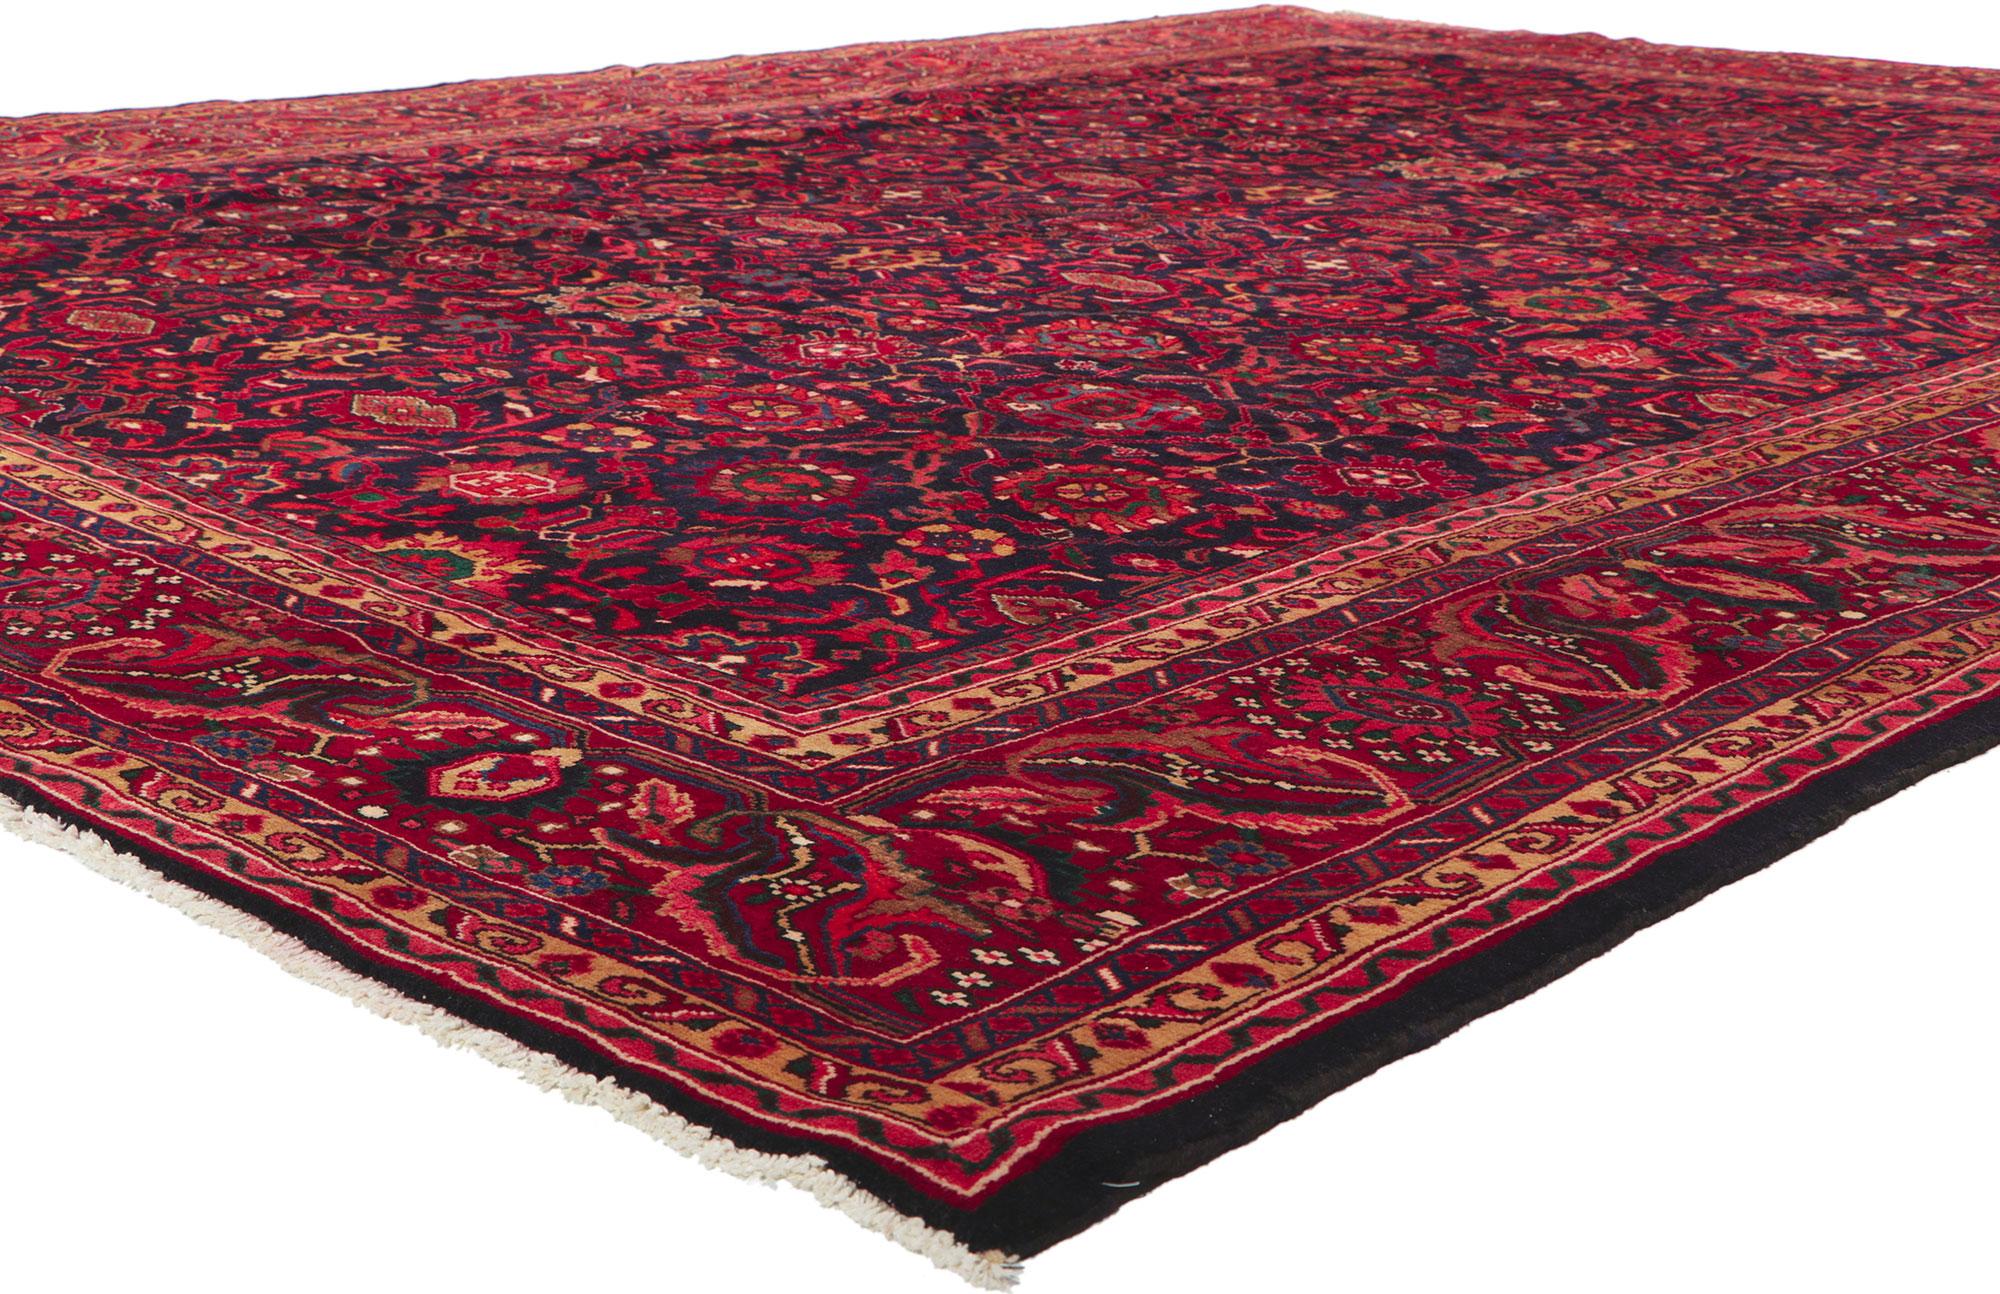 61101 Vintage Persisch Malayer Teppich, 10'01 x 13'06.

Begeben Sie sich auf eine Reise durch Zeit und Tradition mit diesem sorgfältig handgeknüpften Meisterwerk aus Wolle, einem alten persischen Malayer-Teppich, der königliche Raffinesse und